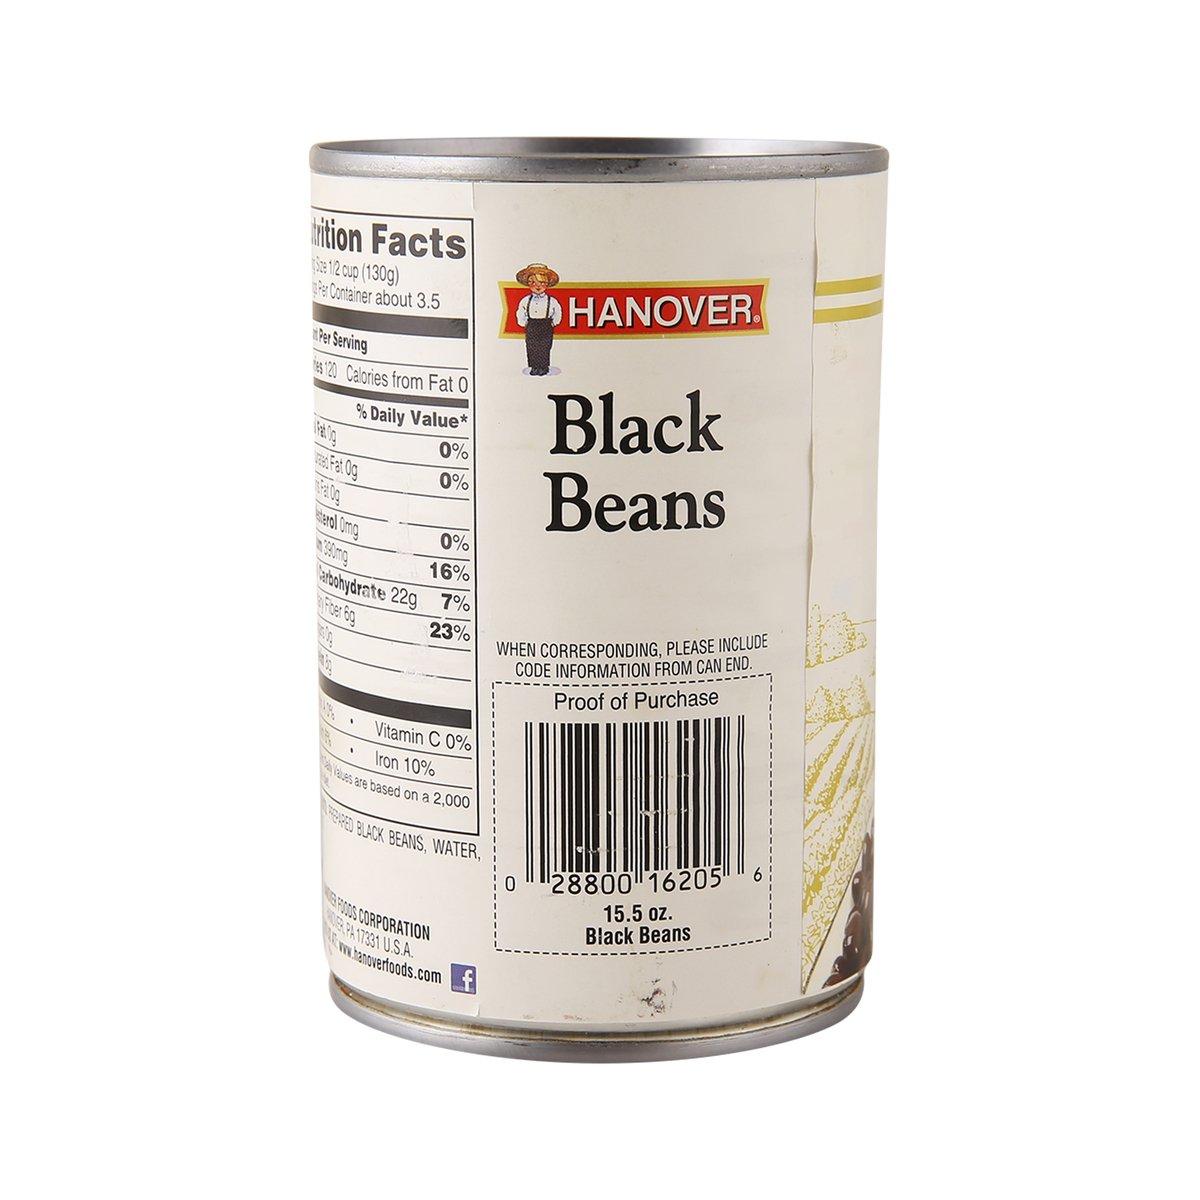 Hanover Black Beans 439 g